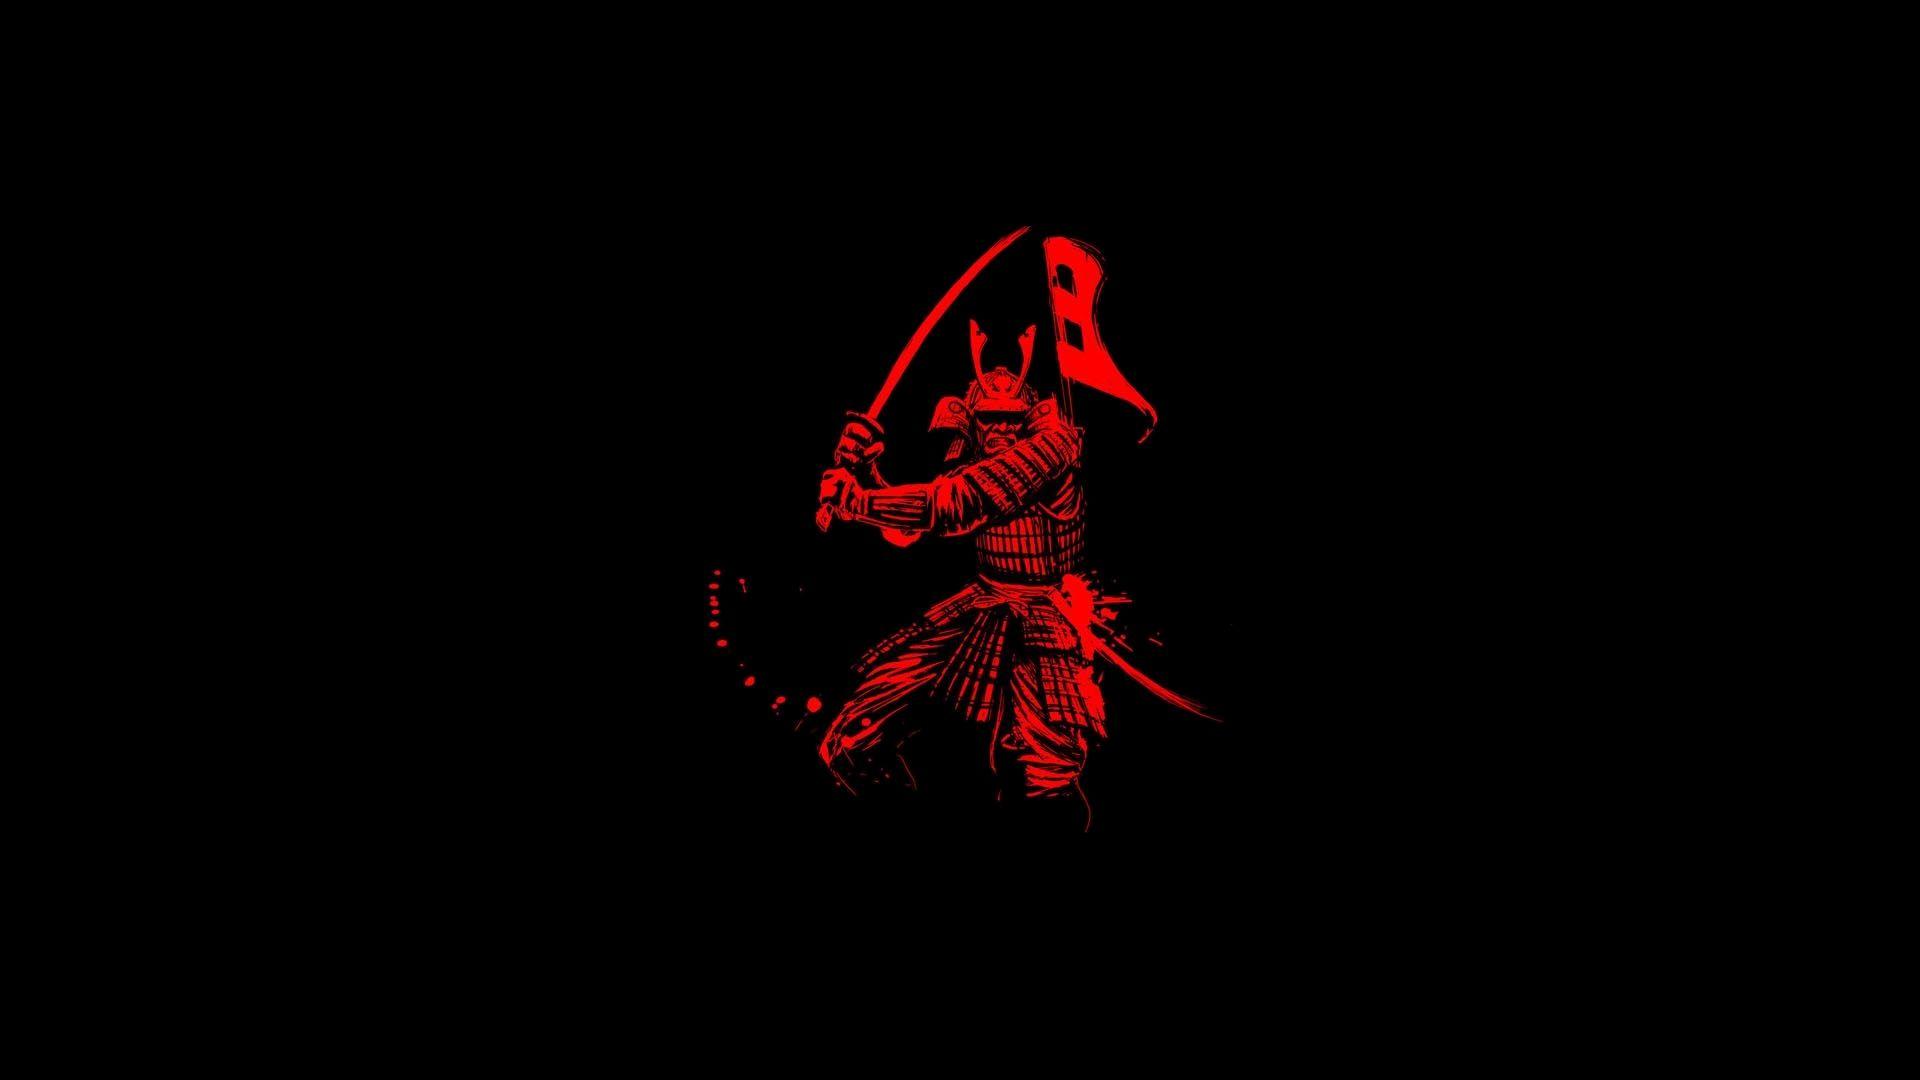 Samurai luôn được biết đến là biểu tượng của sức mạnh, can đảm và trung trực. Vậy tại sao bạn không thử khám phá thế giới Samurai đầy thú vị qua những bộ ảnh đẹp mắt của chúng tôi? Chắc chắn bạn sẽ không thất vọng!